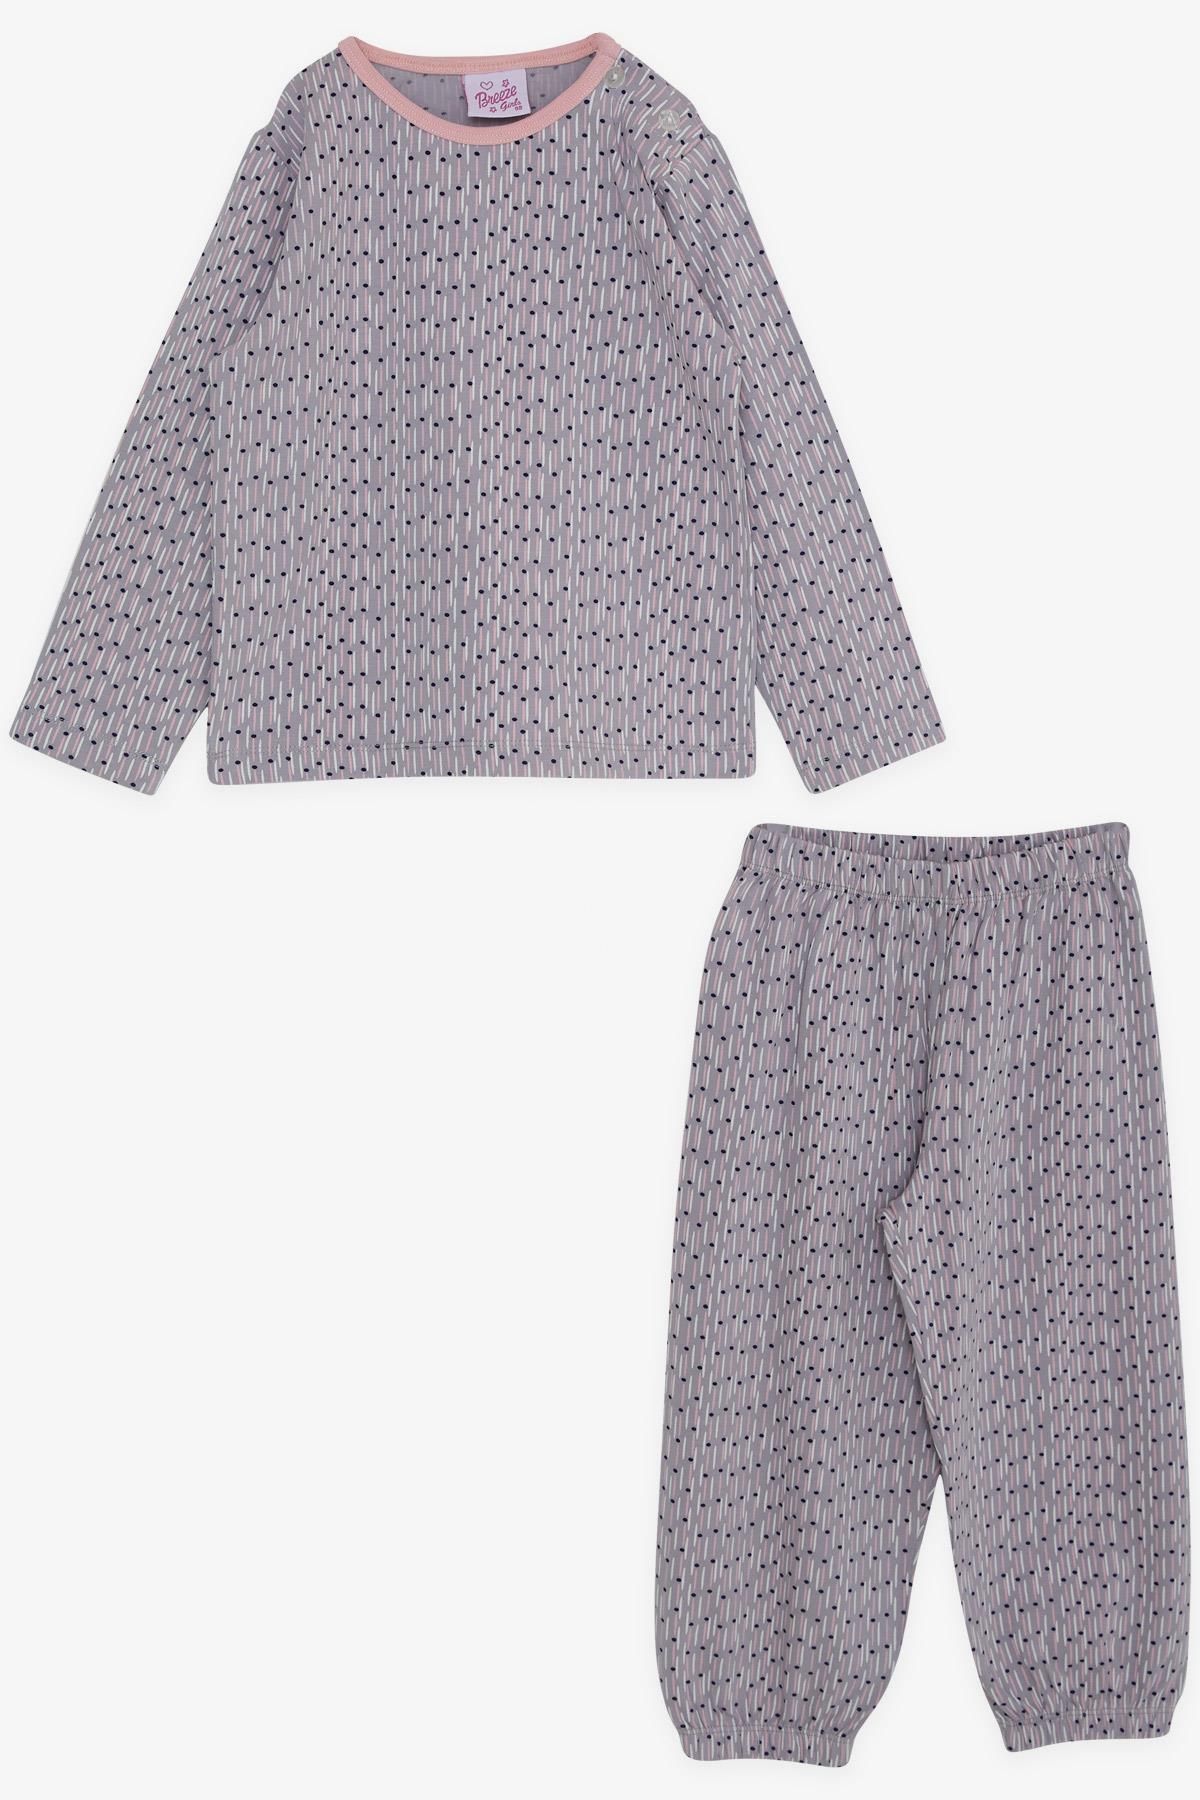 Breeze Kız Bebek Pijama Takımı Desenli 9 Ay-3 Yaş, Açık Lila